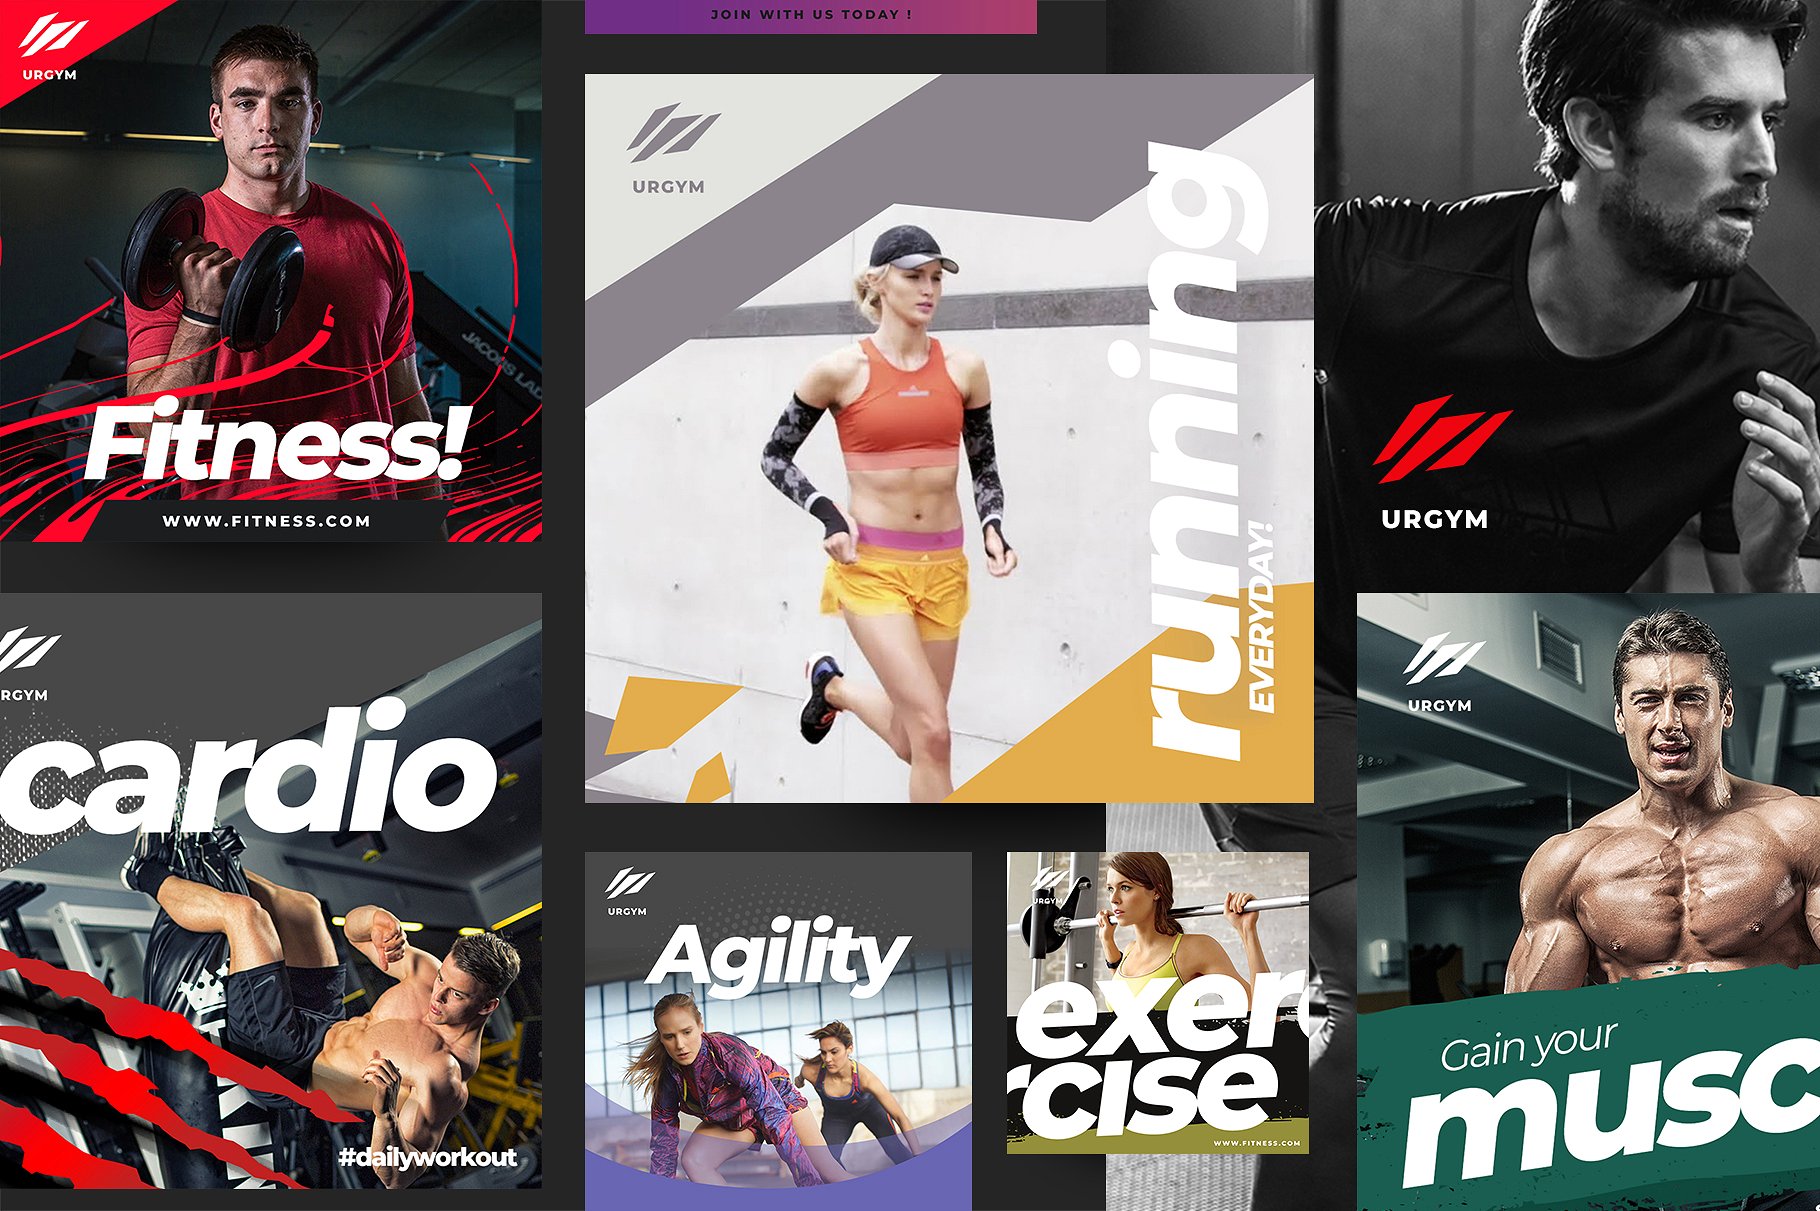 时尚健身&健身器材的instagram社交媒体模板第一素材精选 Fitness & Gym instagram pack 2.0 [psd]插图(2)